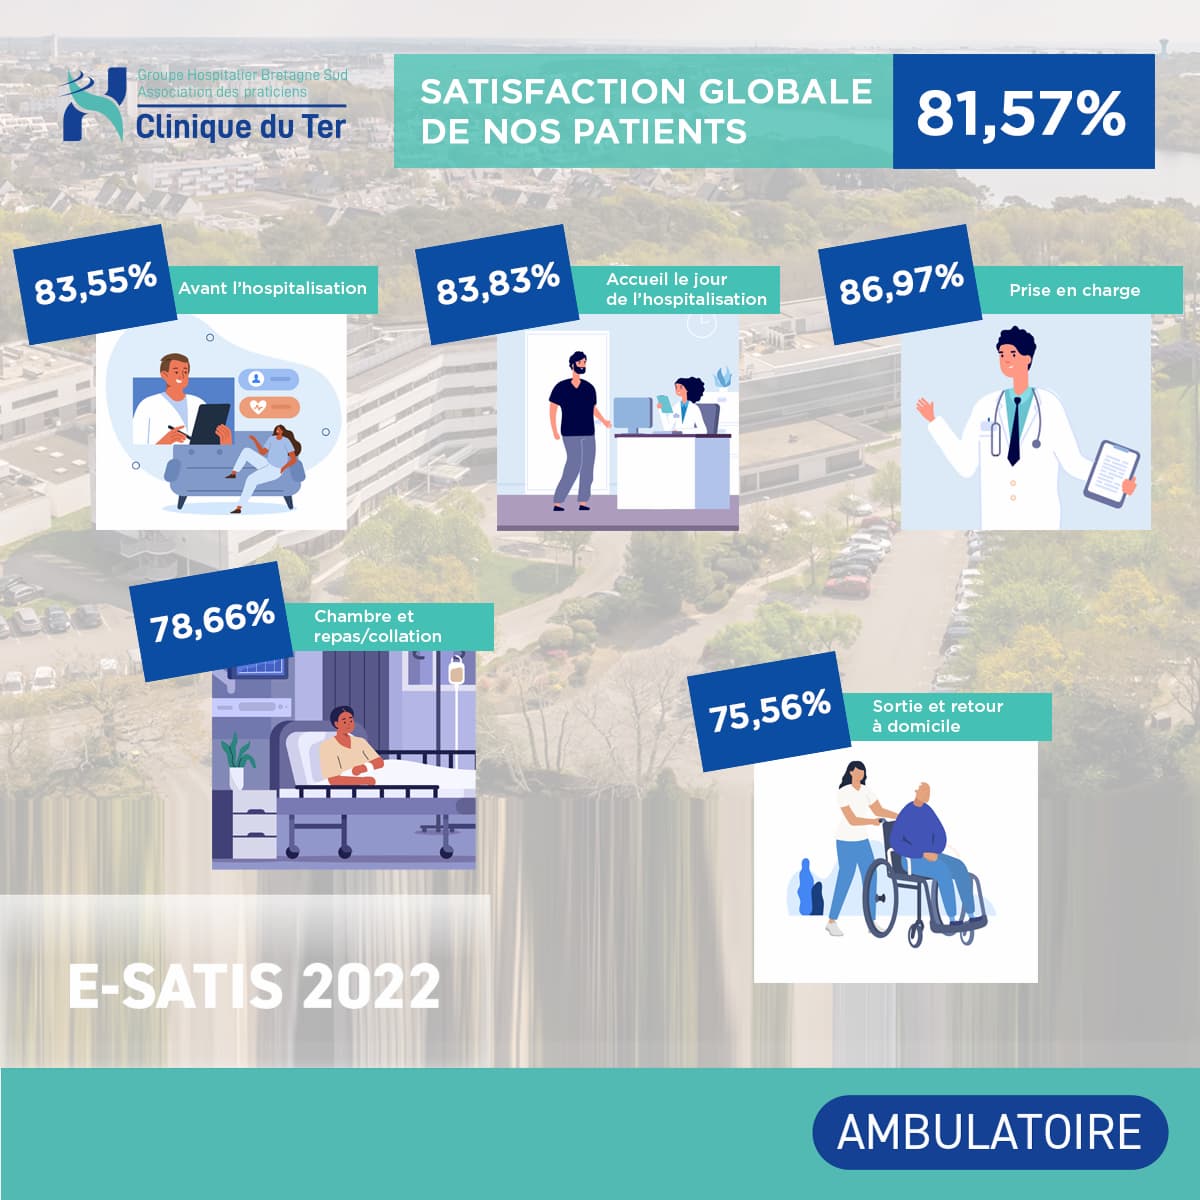 E-satis 2022 - Ambulatoire